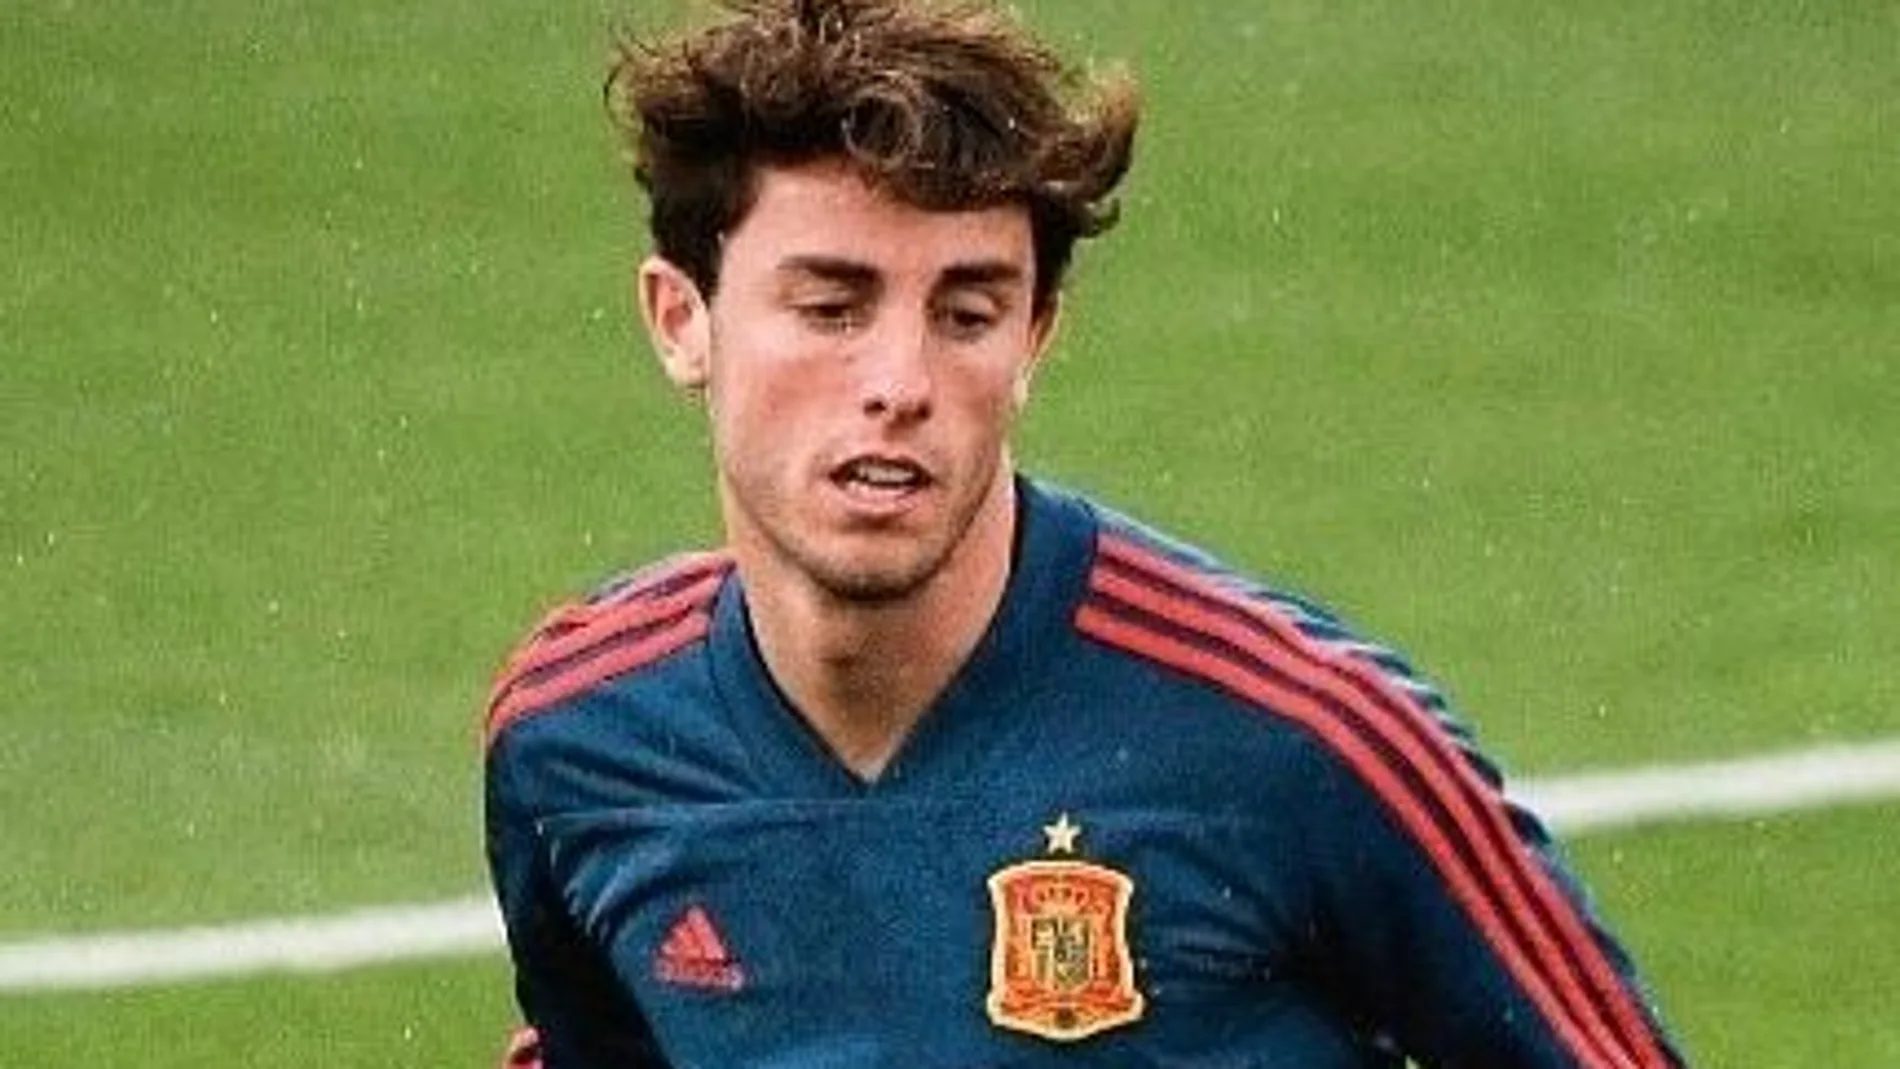 Imagen de Álvaro Odriozola con la camiseta de la selección española de fútbol durante el reciente Mundial de Rusia.